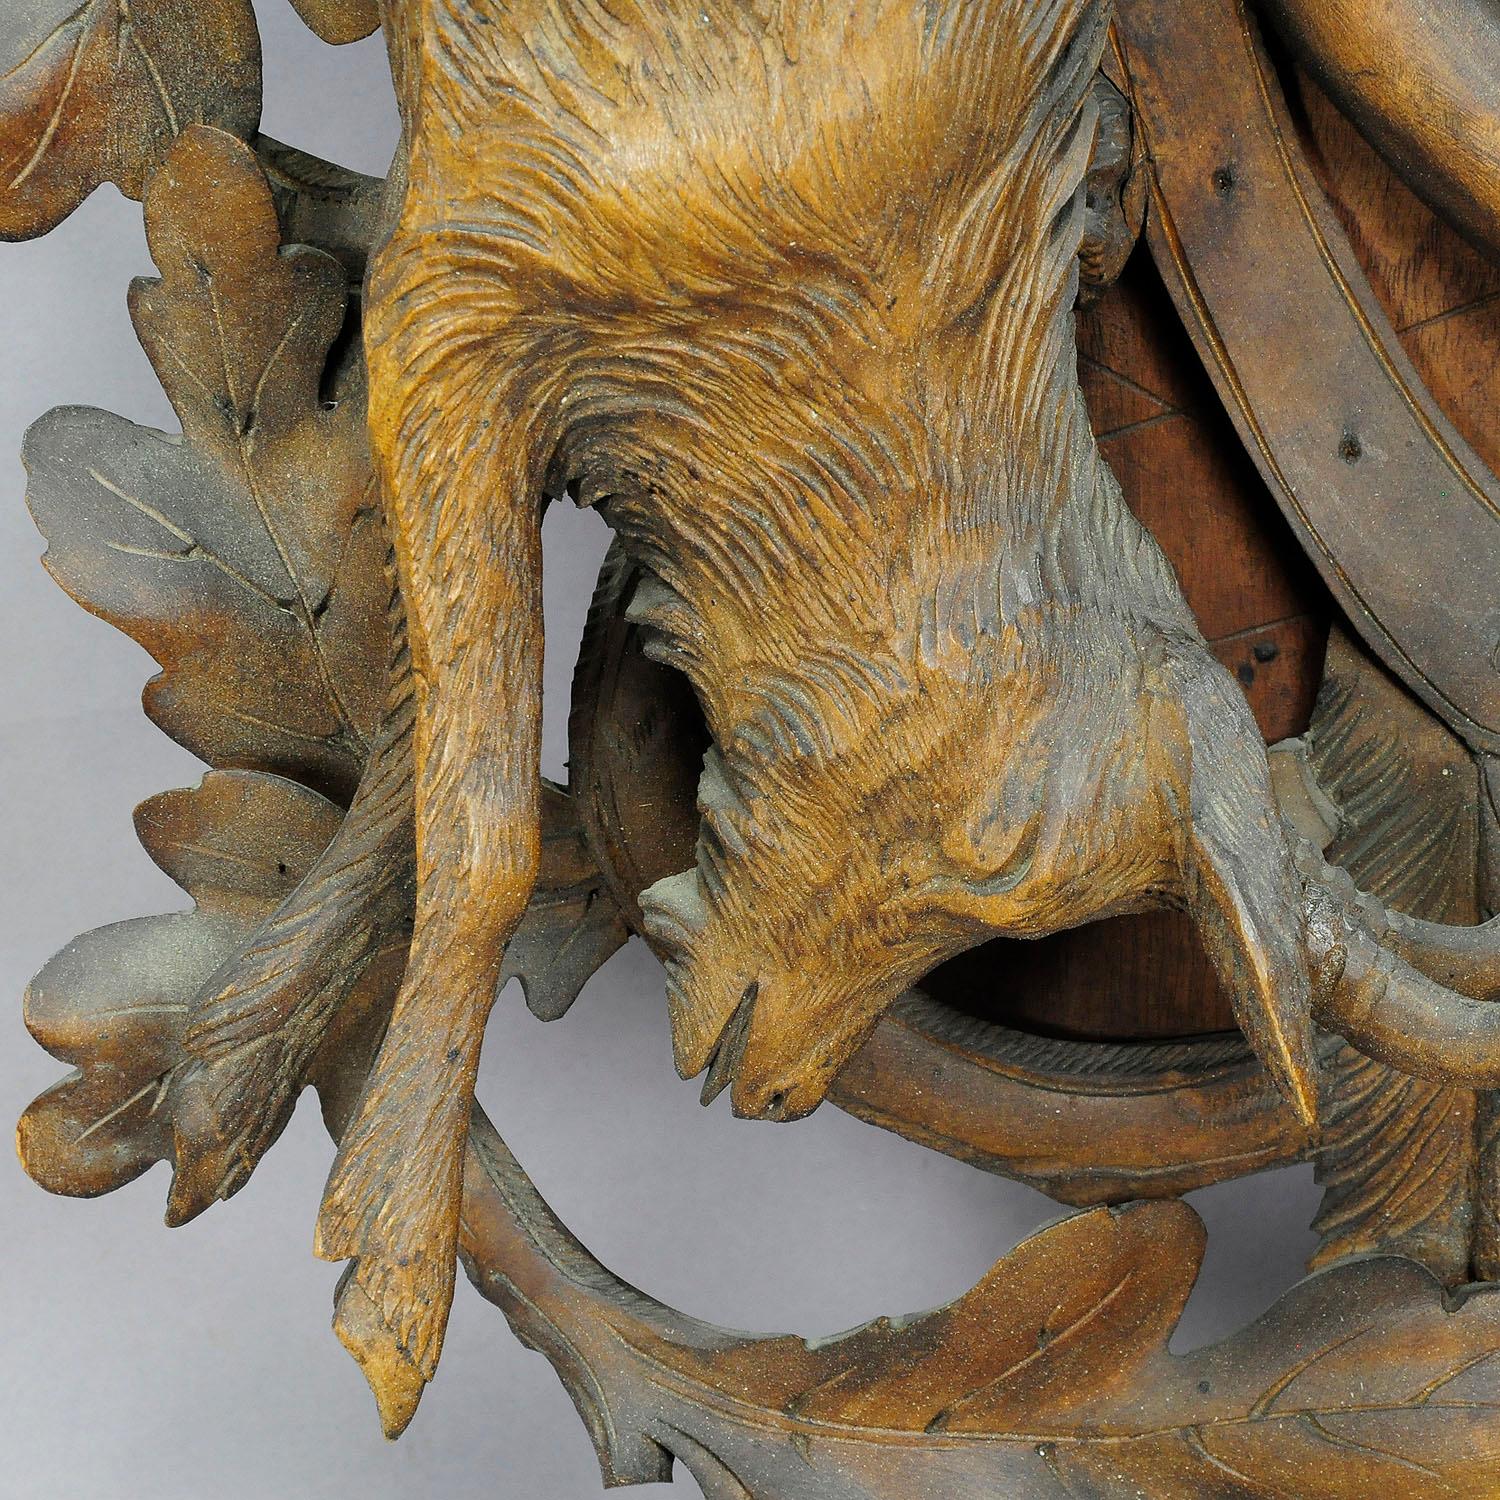 cuckoo clock deer head with antlers